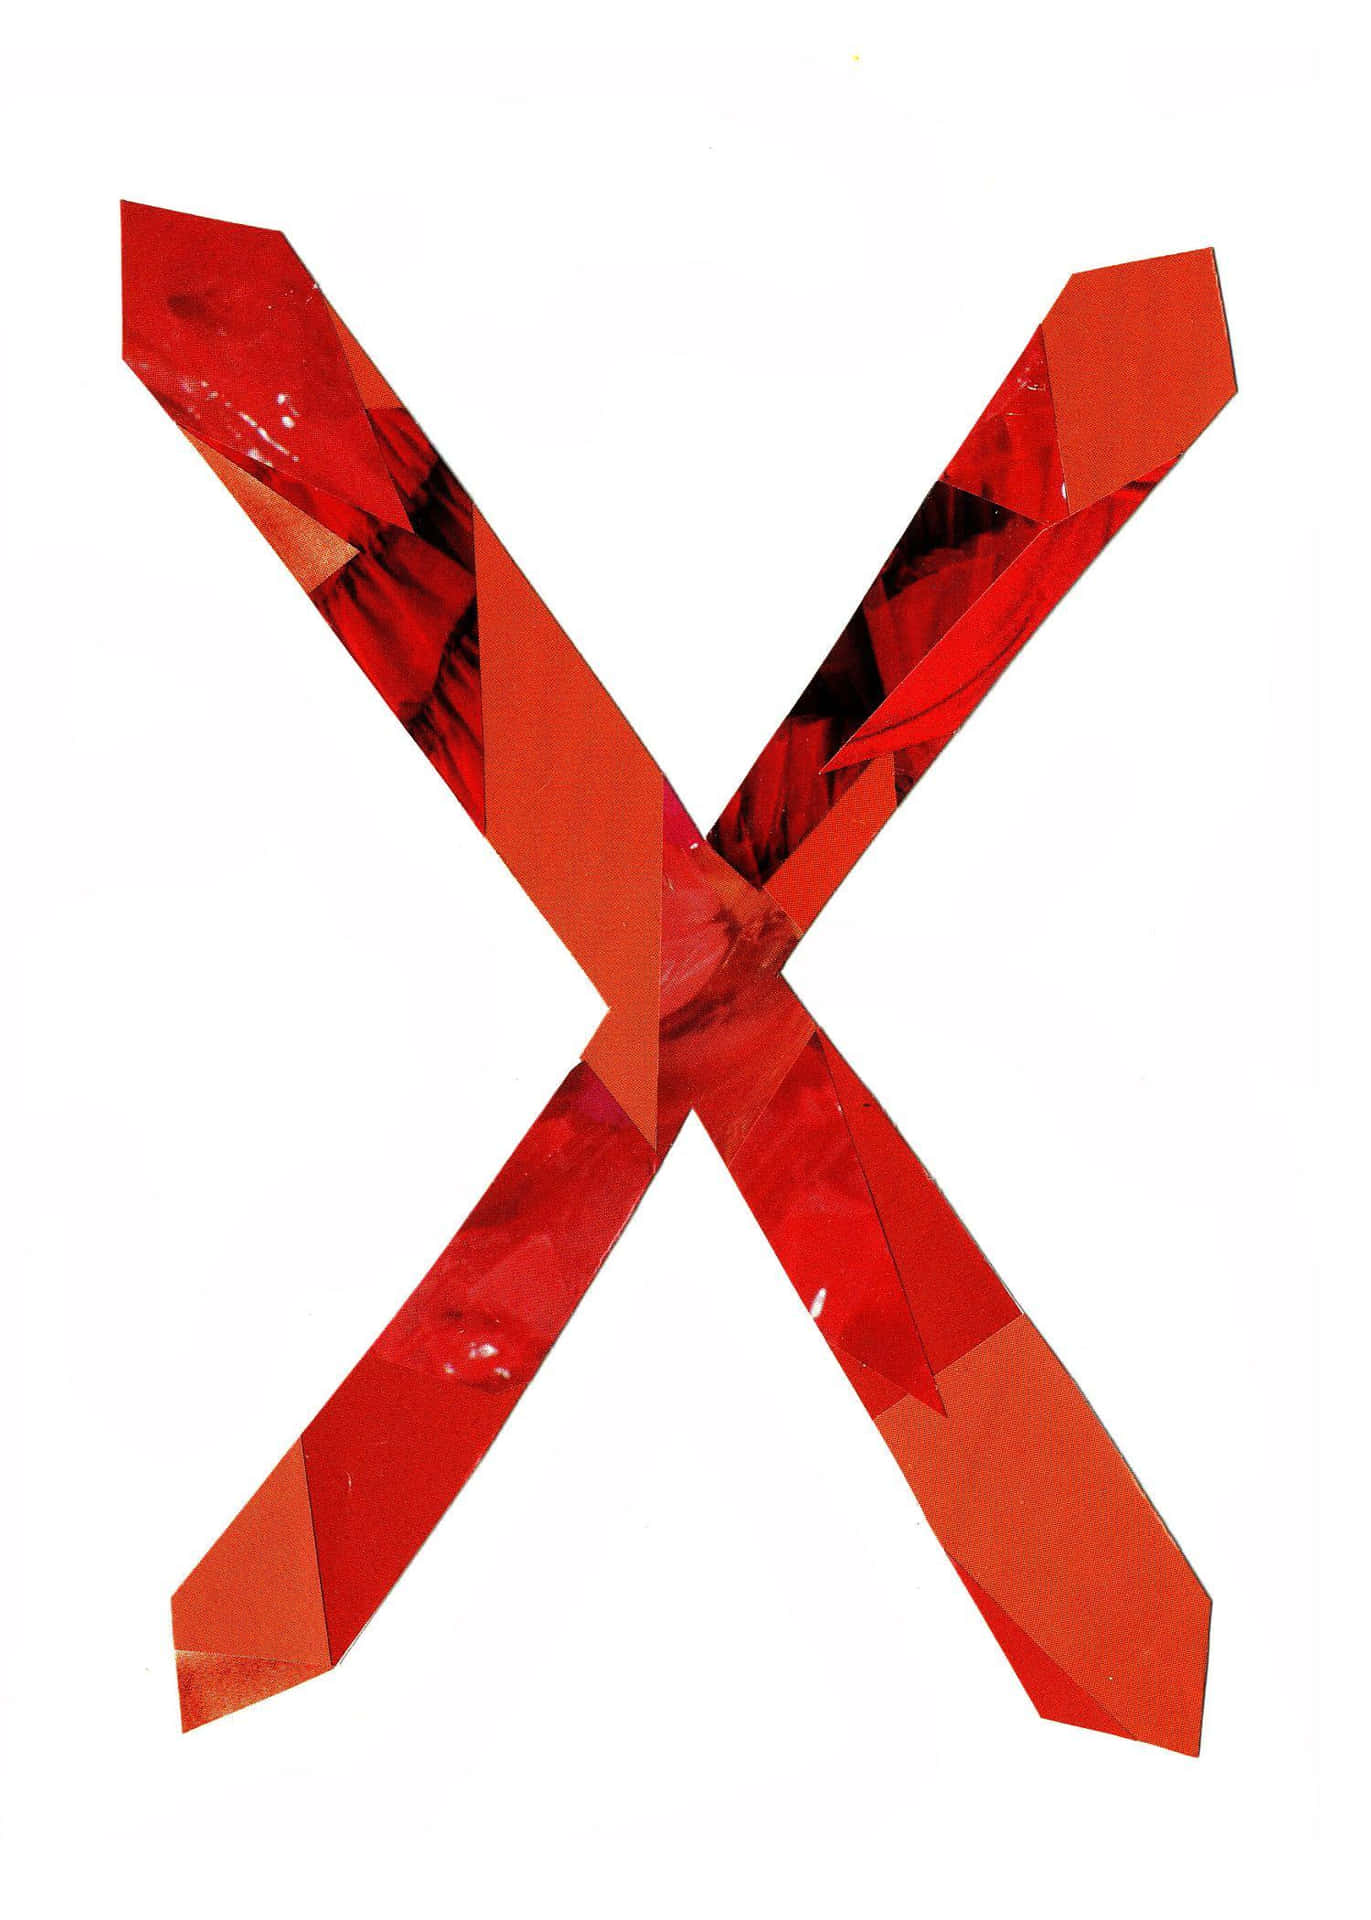 Einrotes X Mit Einem Roten Streifen